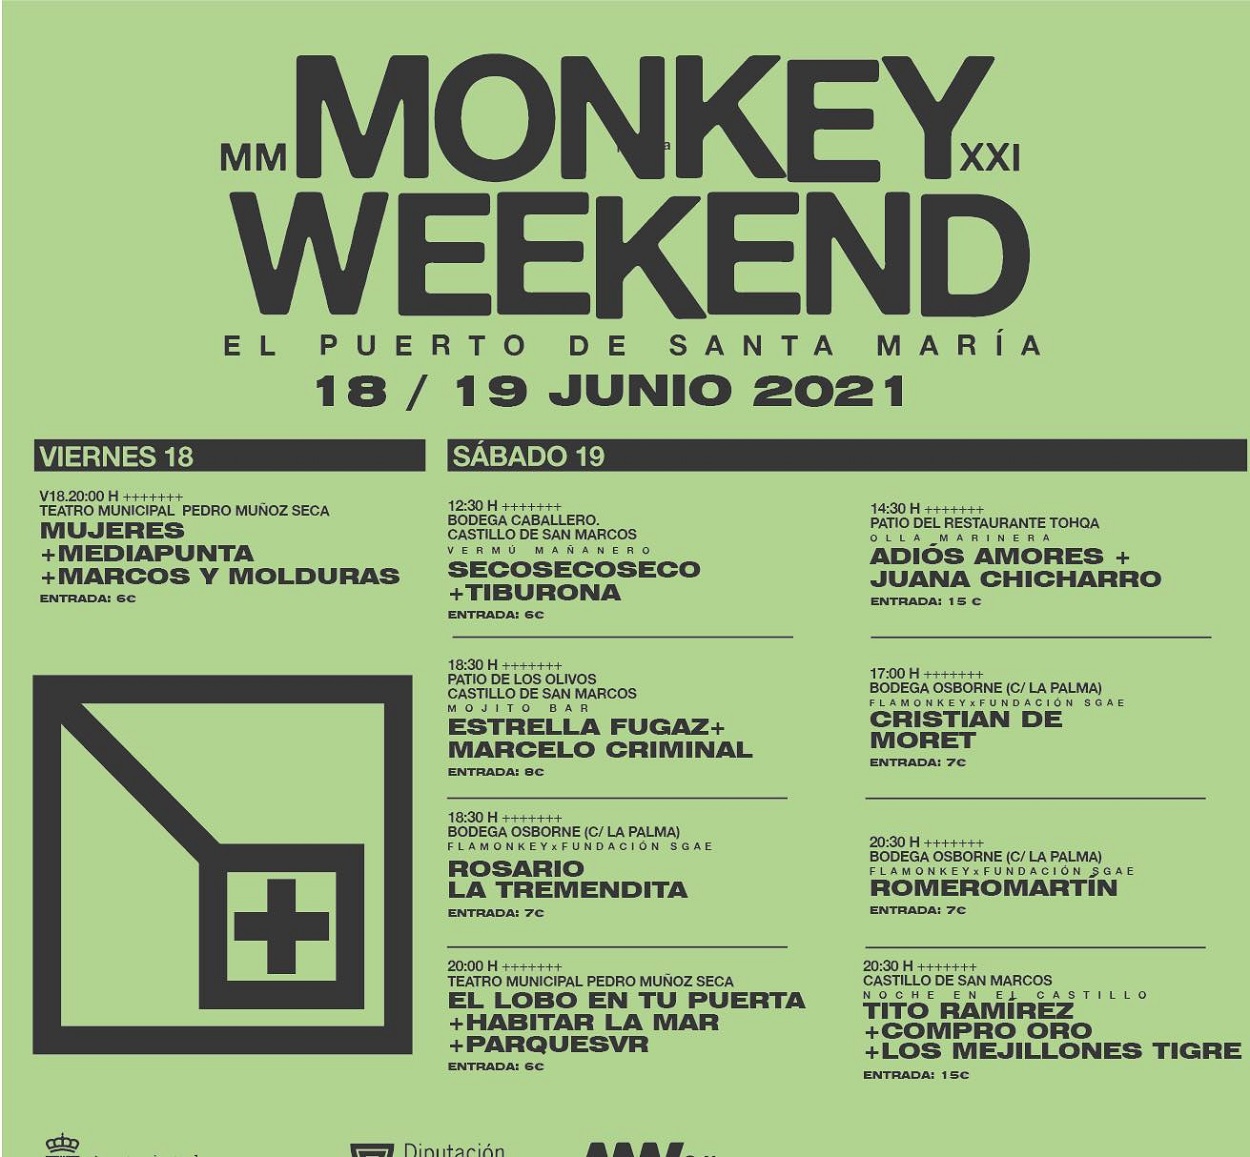 Monkey Weekend anuncia su programación para los días 18 y 19 de junio